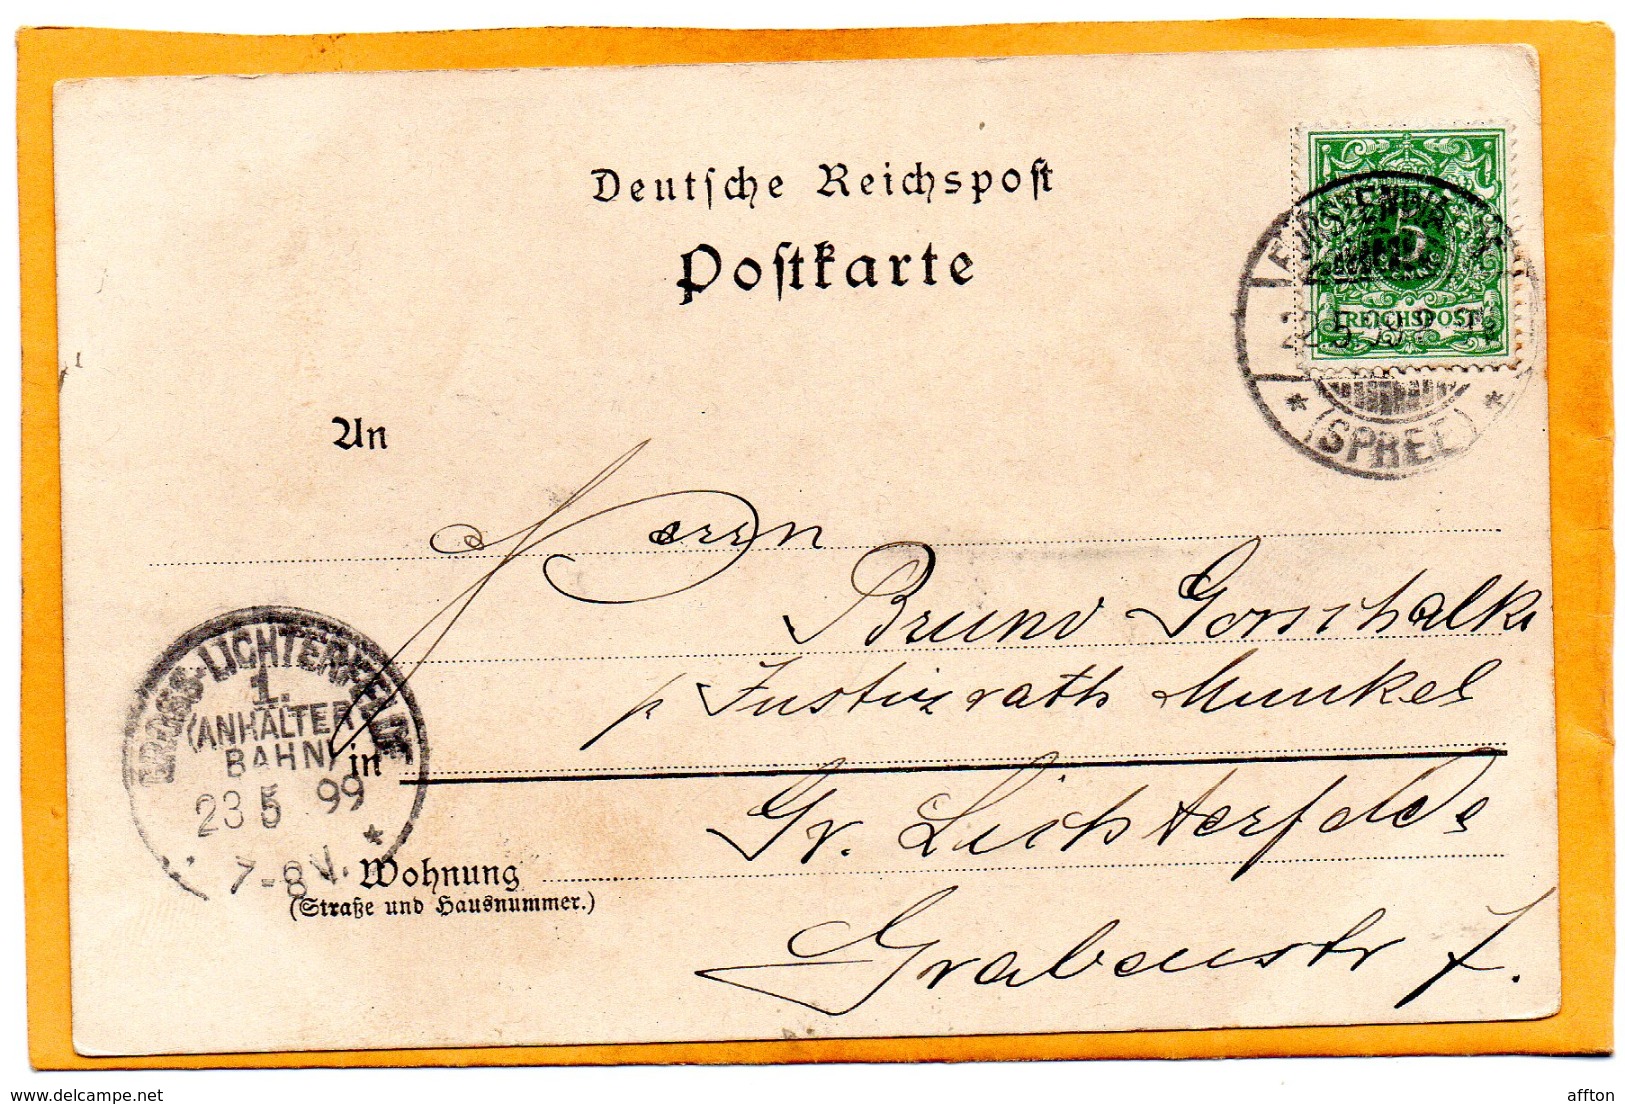 Gruss Aus Furstenwalde Fuerstenwalde Germany 1899 Postcard - Fuerstenwalde